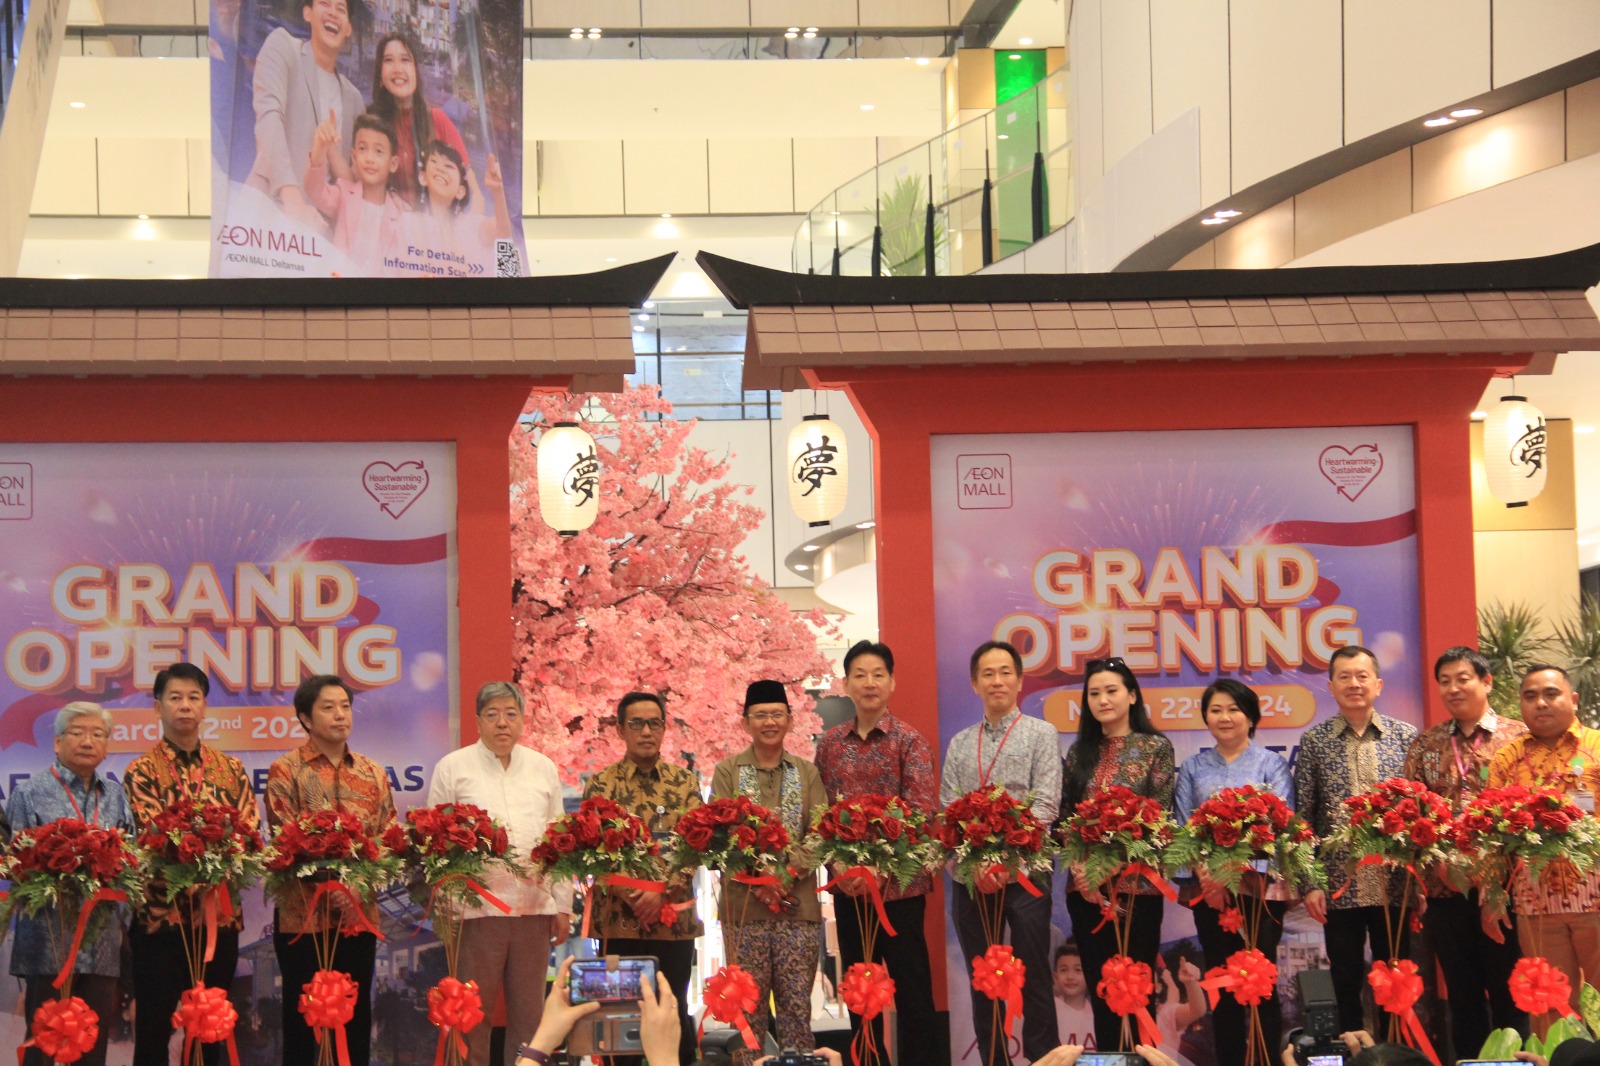 AEON MALL Terbesar di Asia Tenggara Resmi Di Buka, Berikan Beragam Promo dan Hiburan Menarik Selama Opening